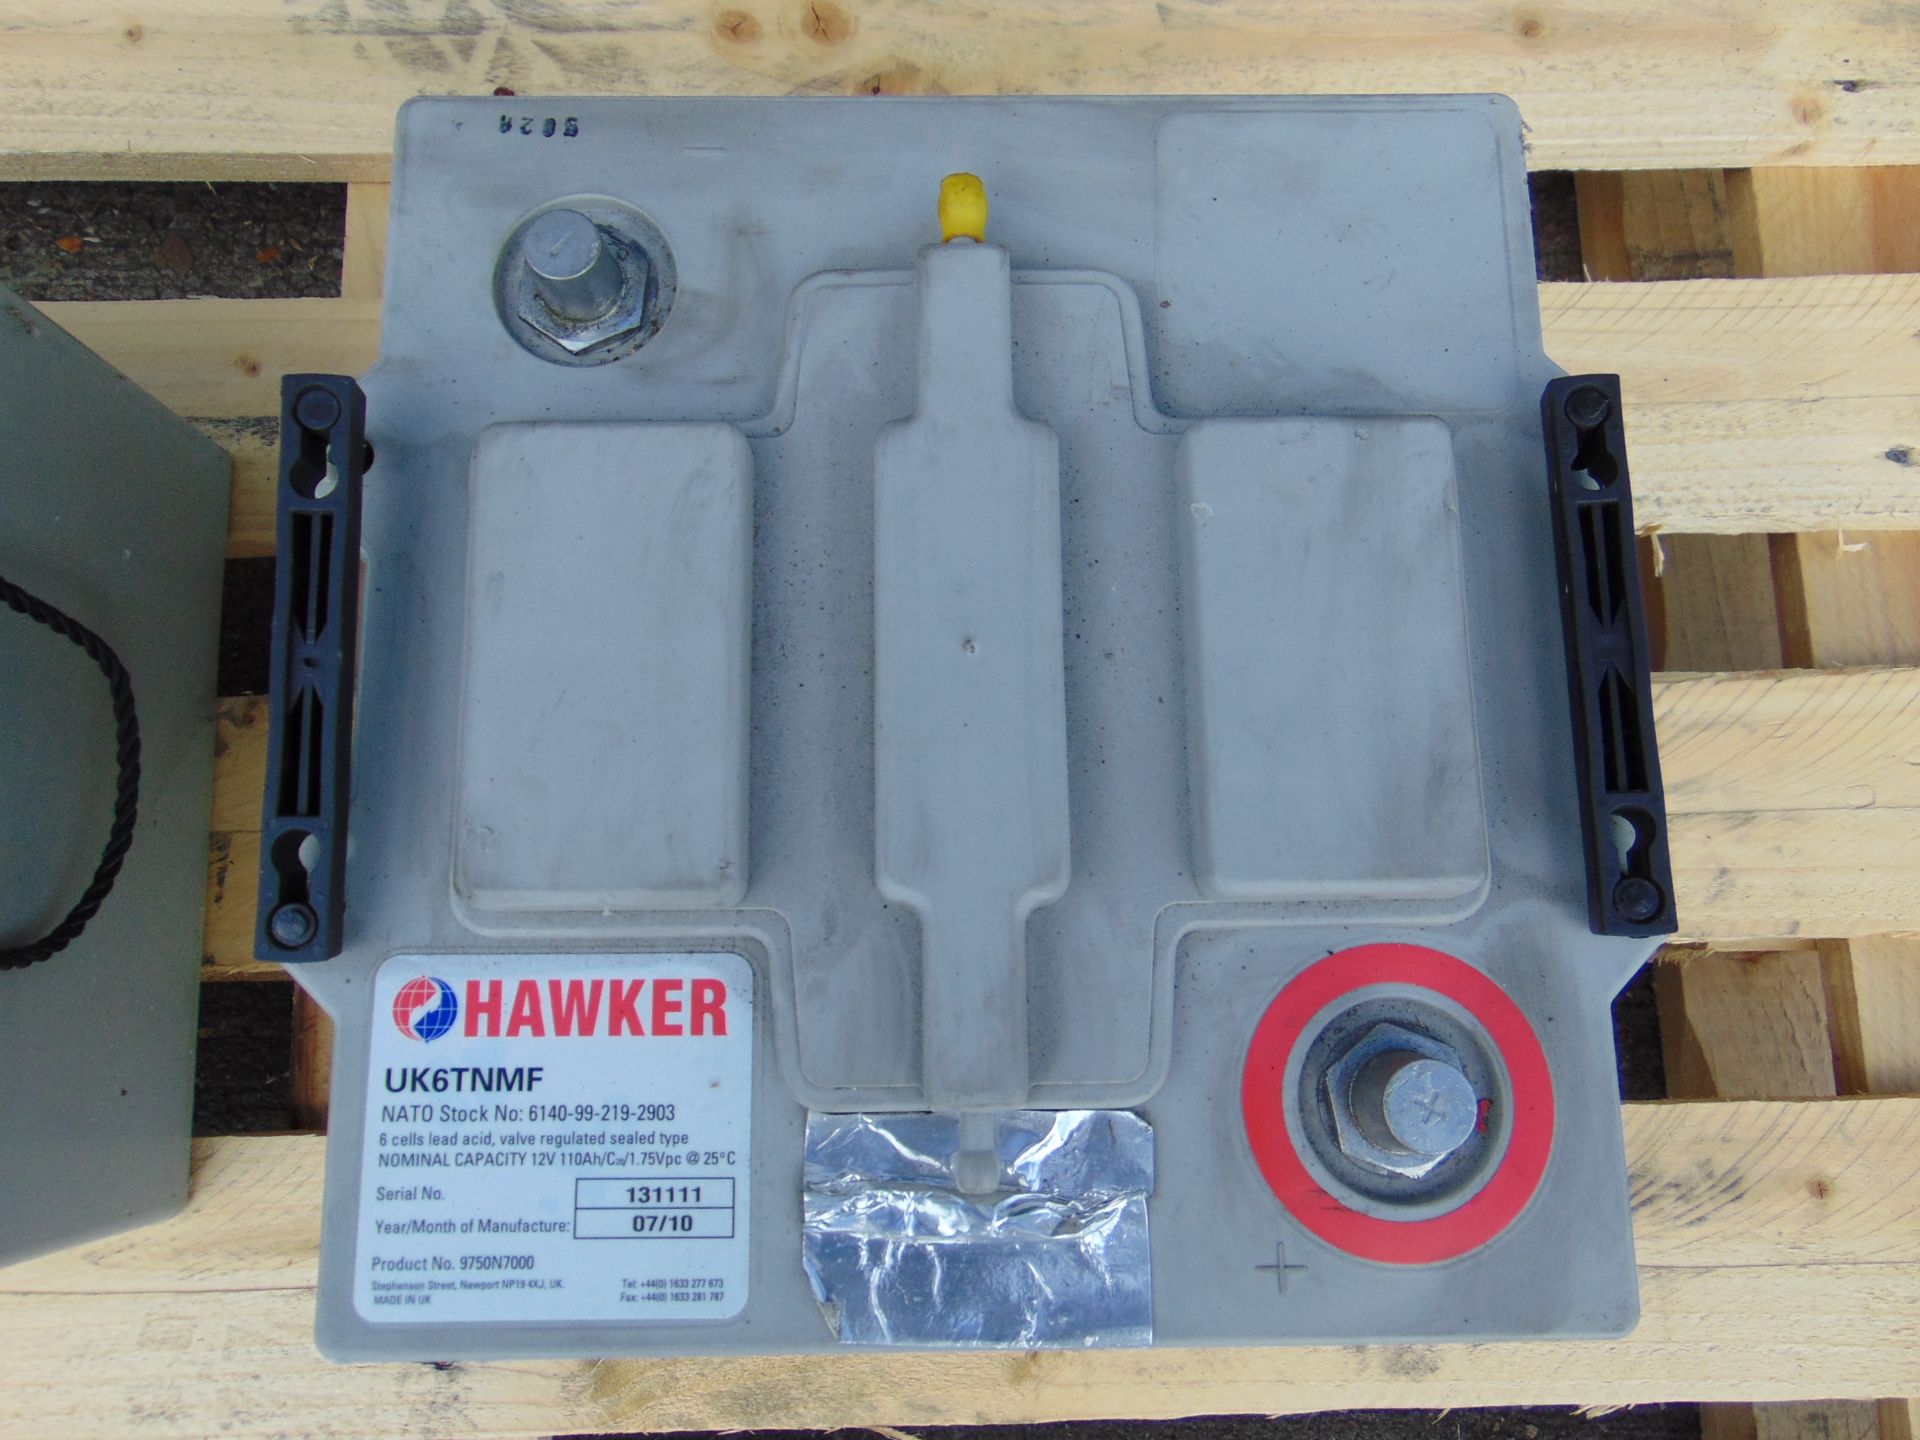 2 x Hawker UK6TFM 12 volt Batteries - Image 3 of 4